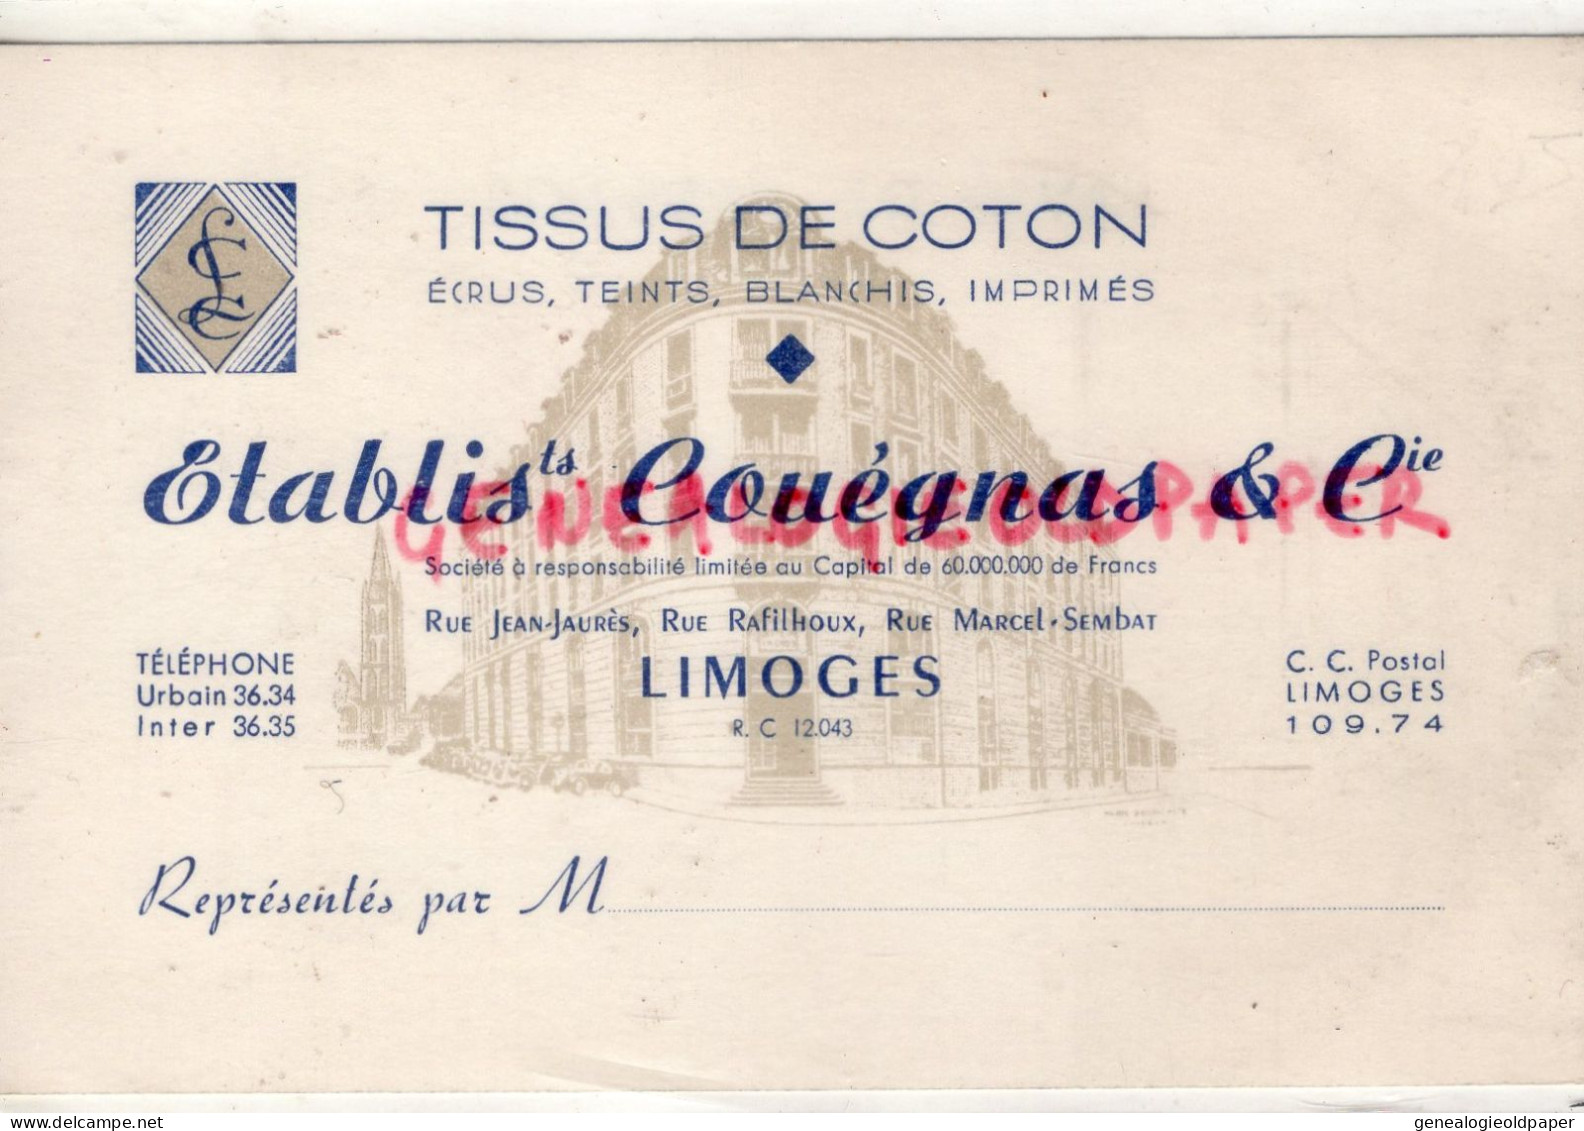 87-LIMOGES-MAGASIN VETEMENTS TISSUS COTON- COUEGNAS-RUE JEAN JAURES-RAFILHOUX-MARCEL SEMBLAT-CARTE PRECUSEUR - Textile & Clothing